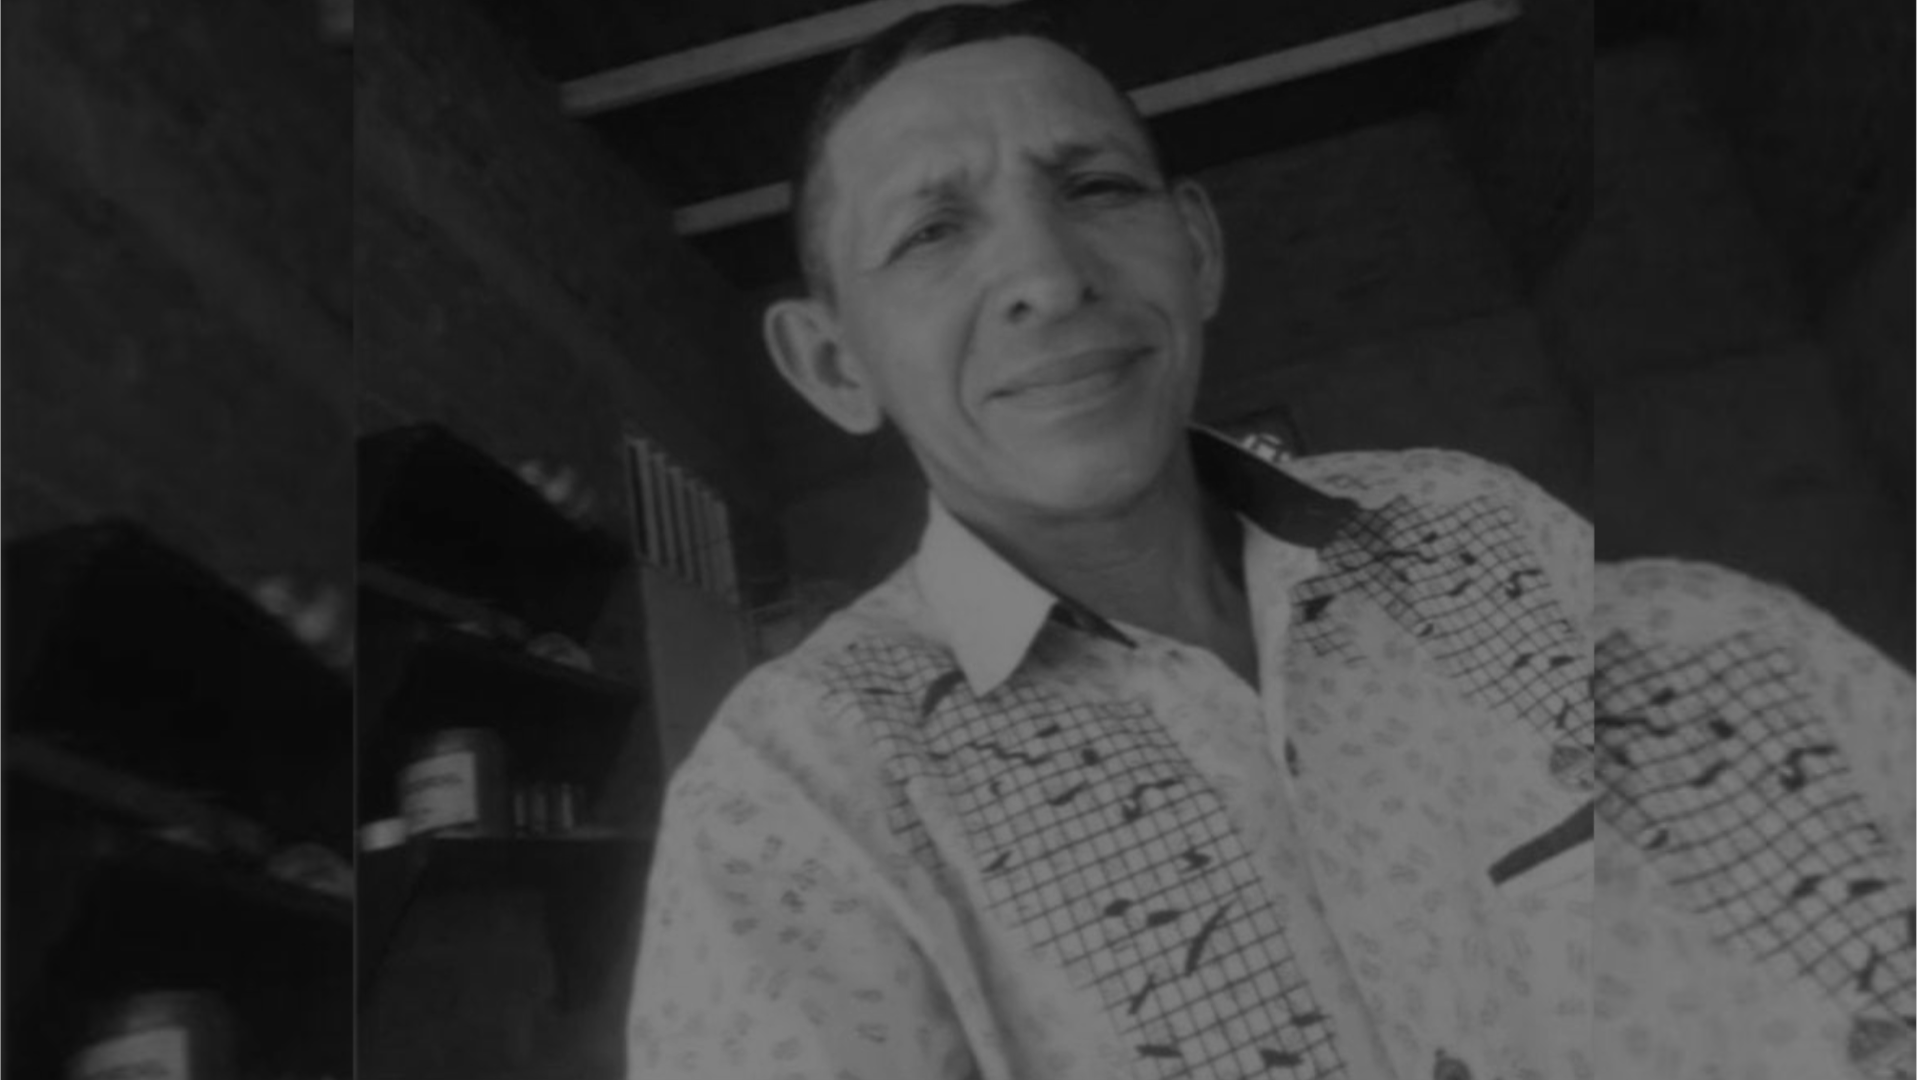 El líder social Albert Camilo Mendoza Corzo fue asesinado el martes 21 de marzo en zona rural de Valledupar (Cesar). (Indepaz)